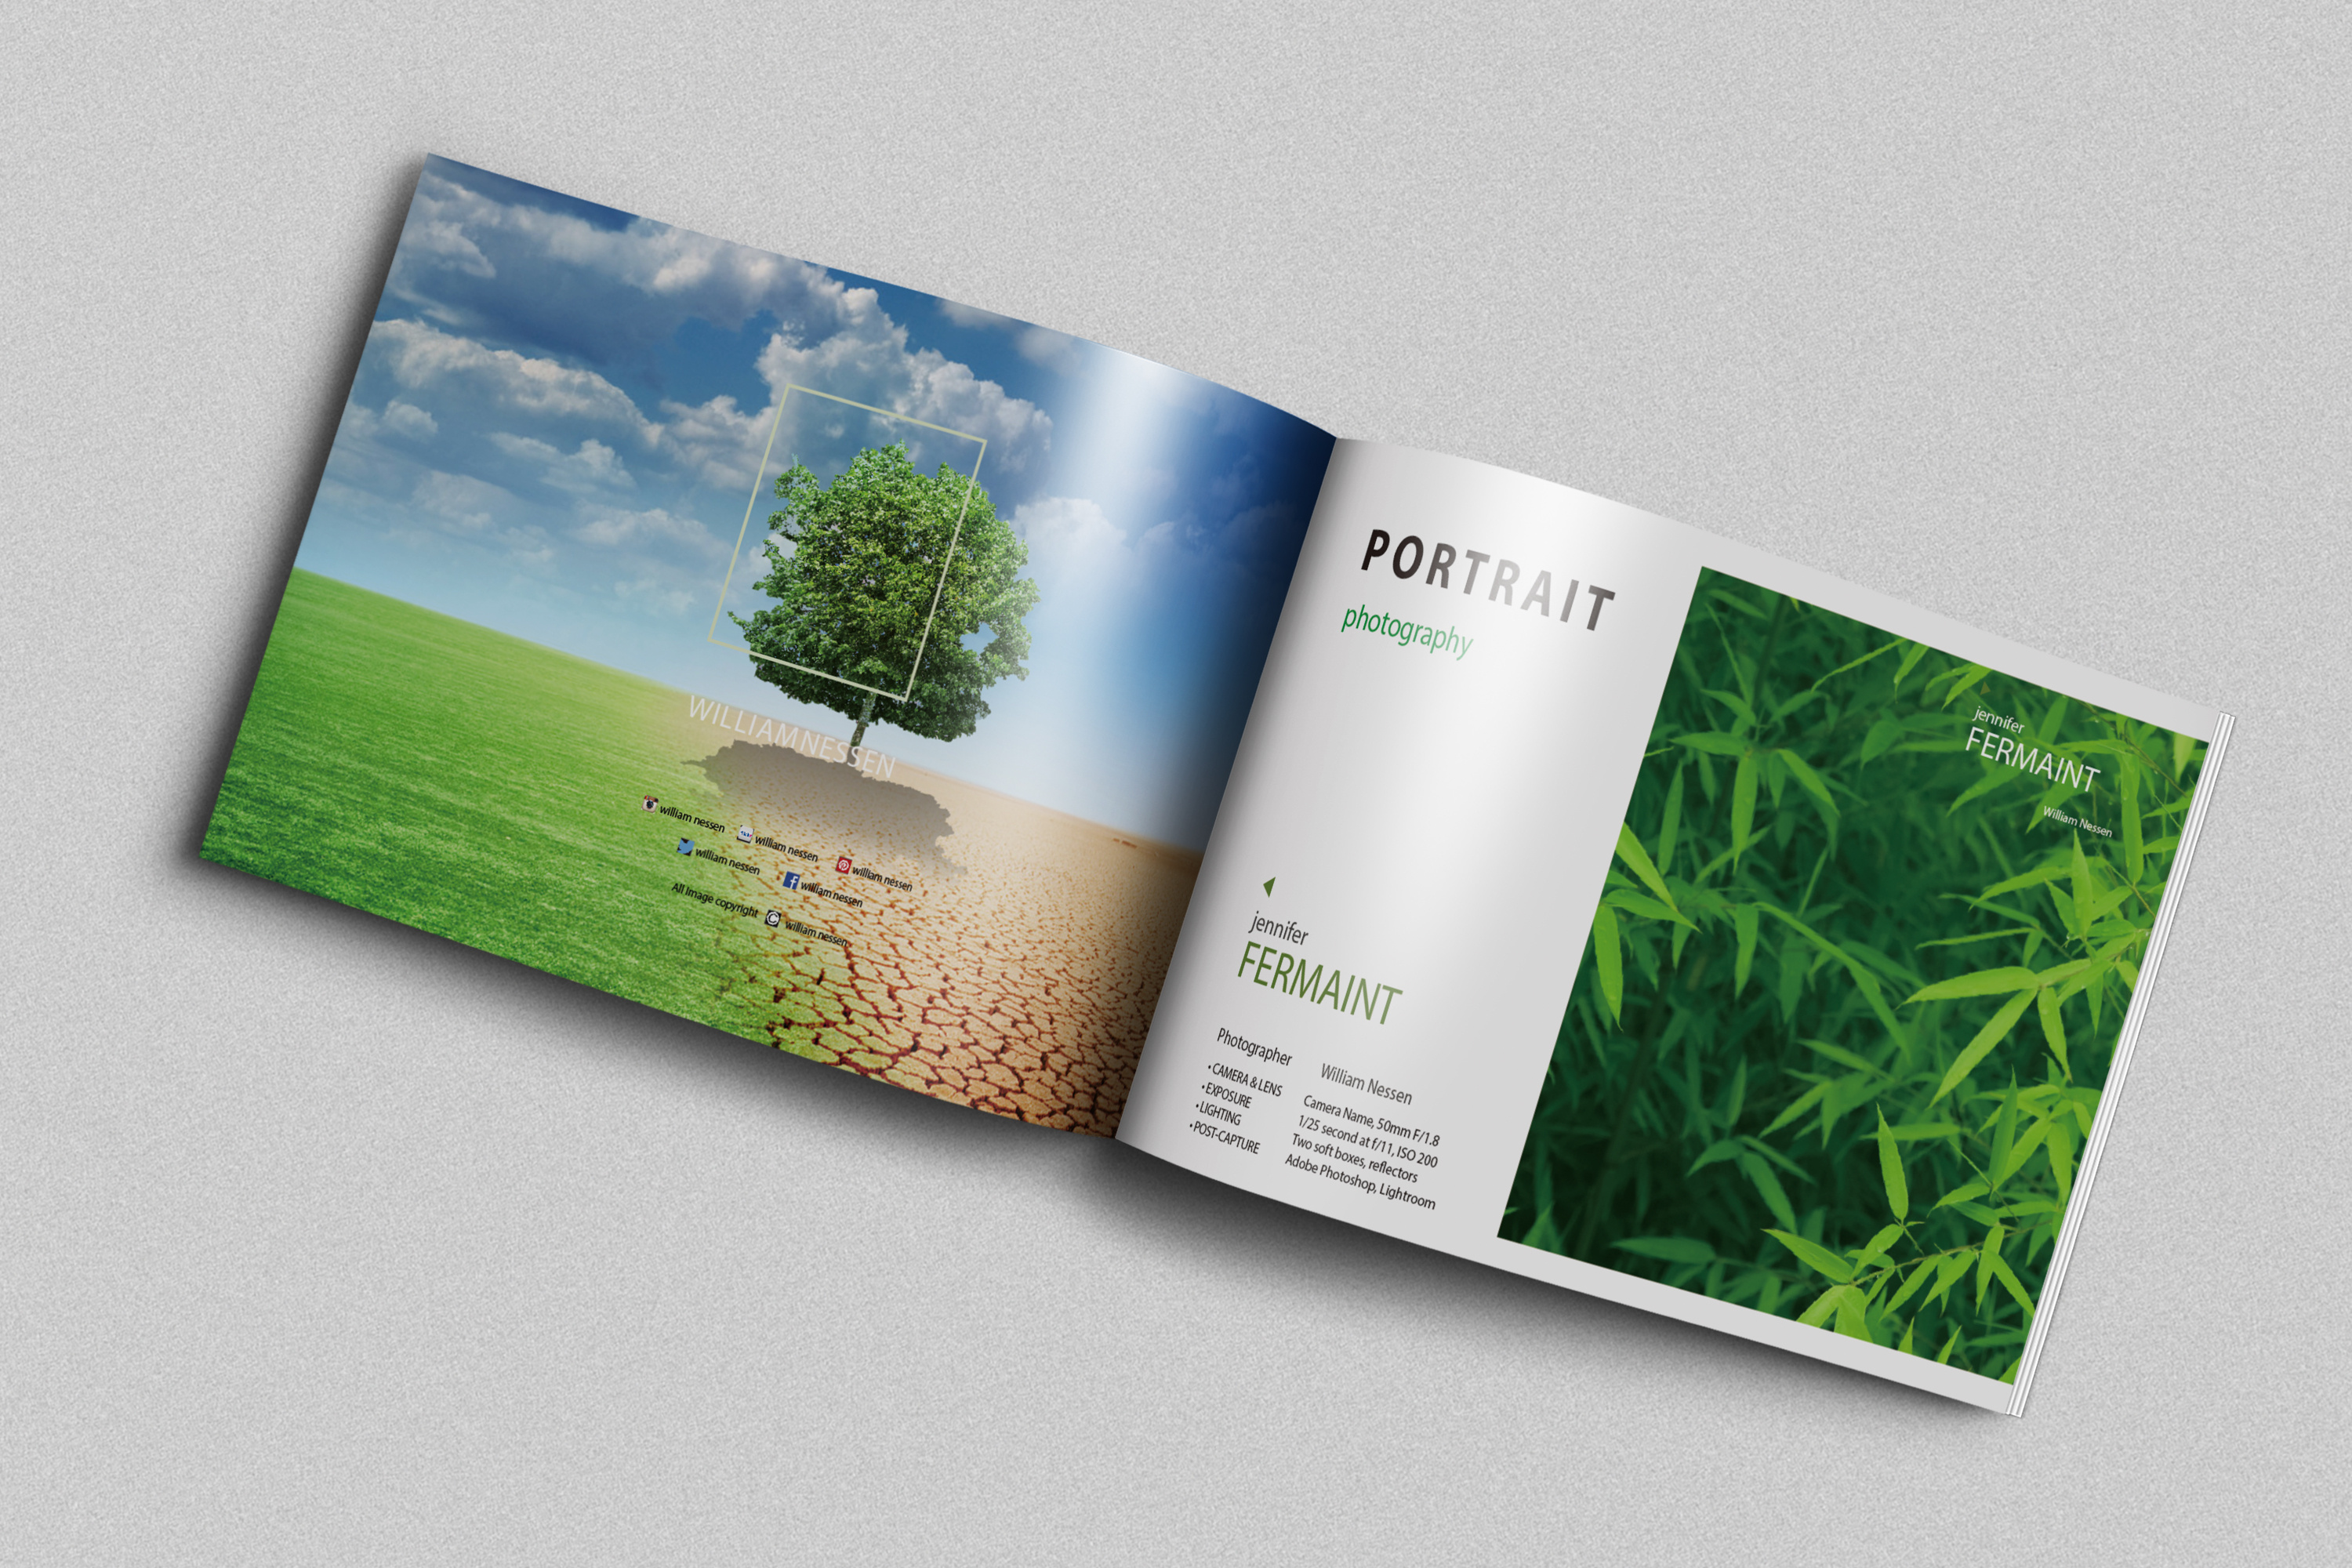 环保宣传册封面设计图片